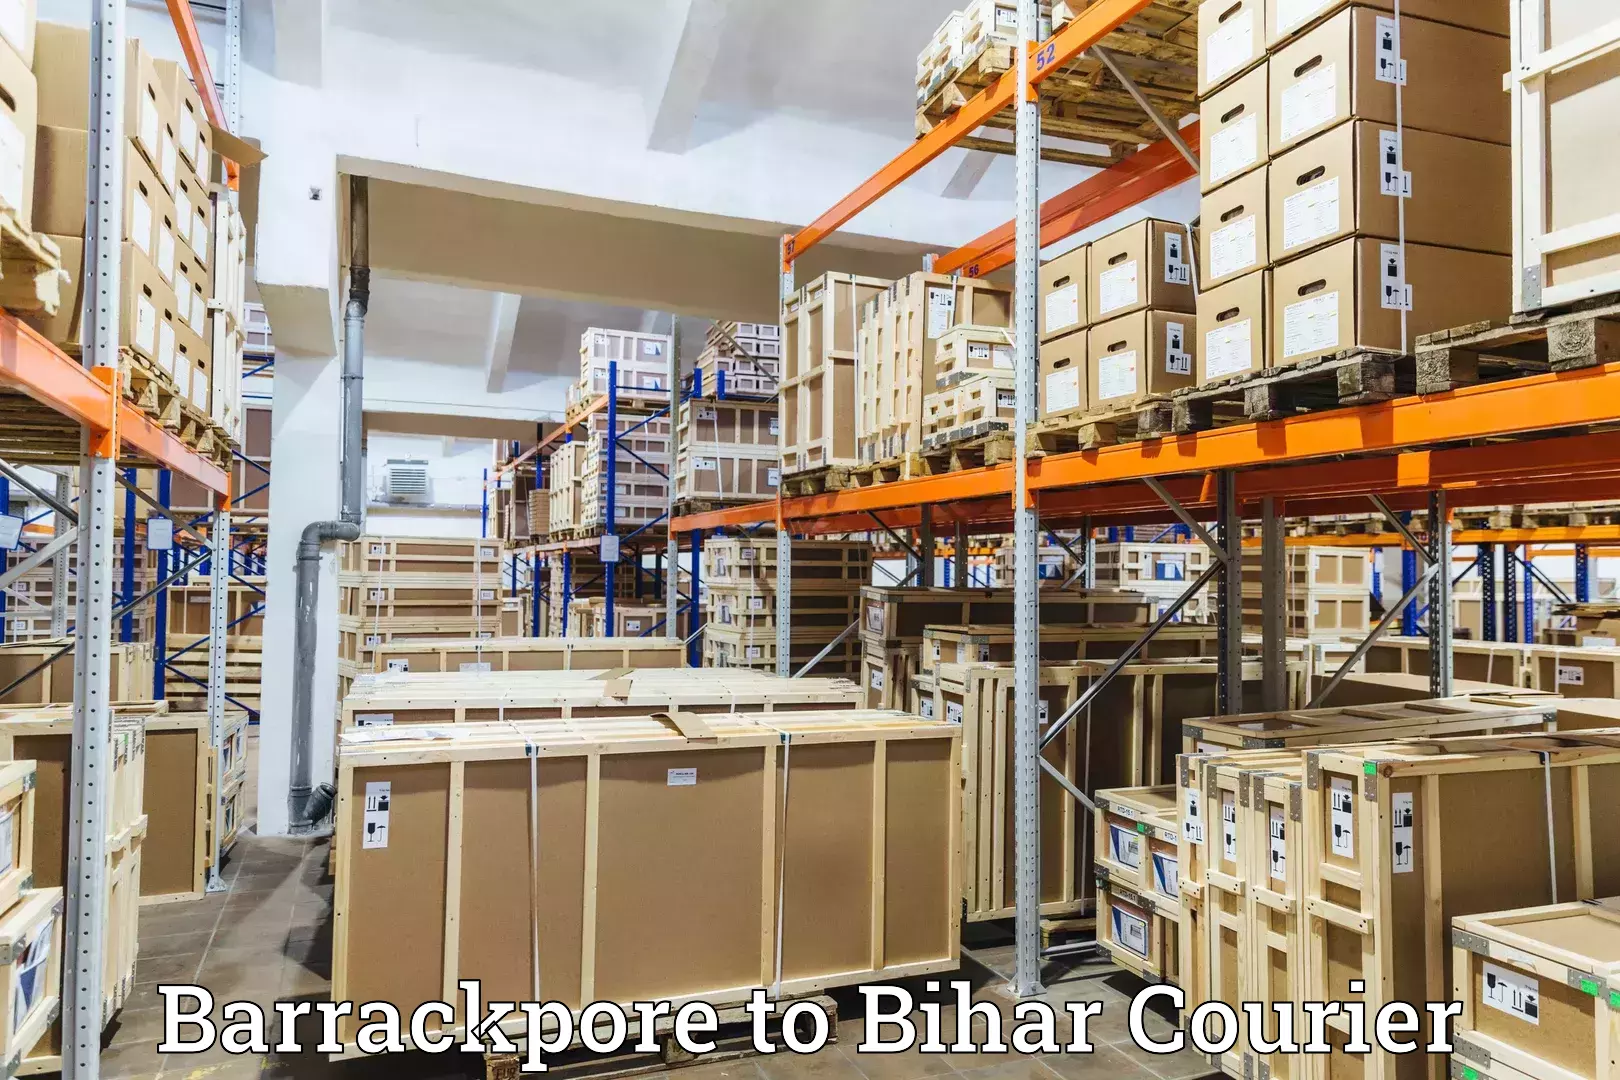 Digital courier platforms Barrackpore to Bihar